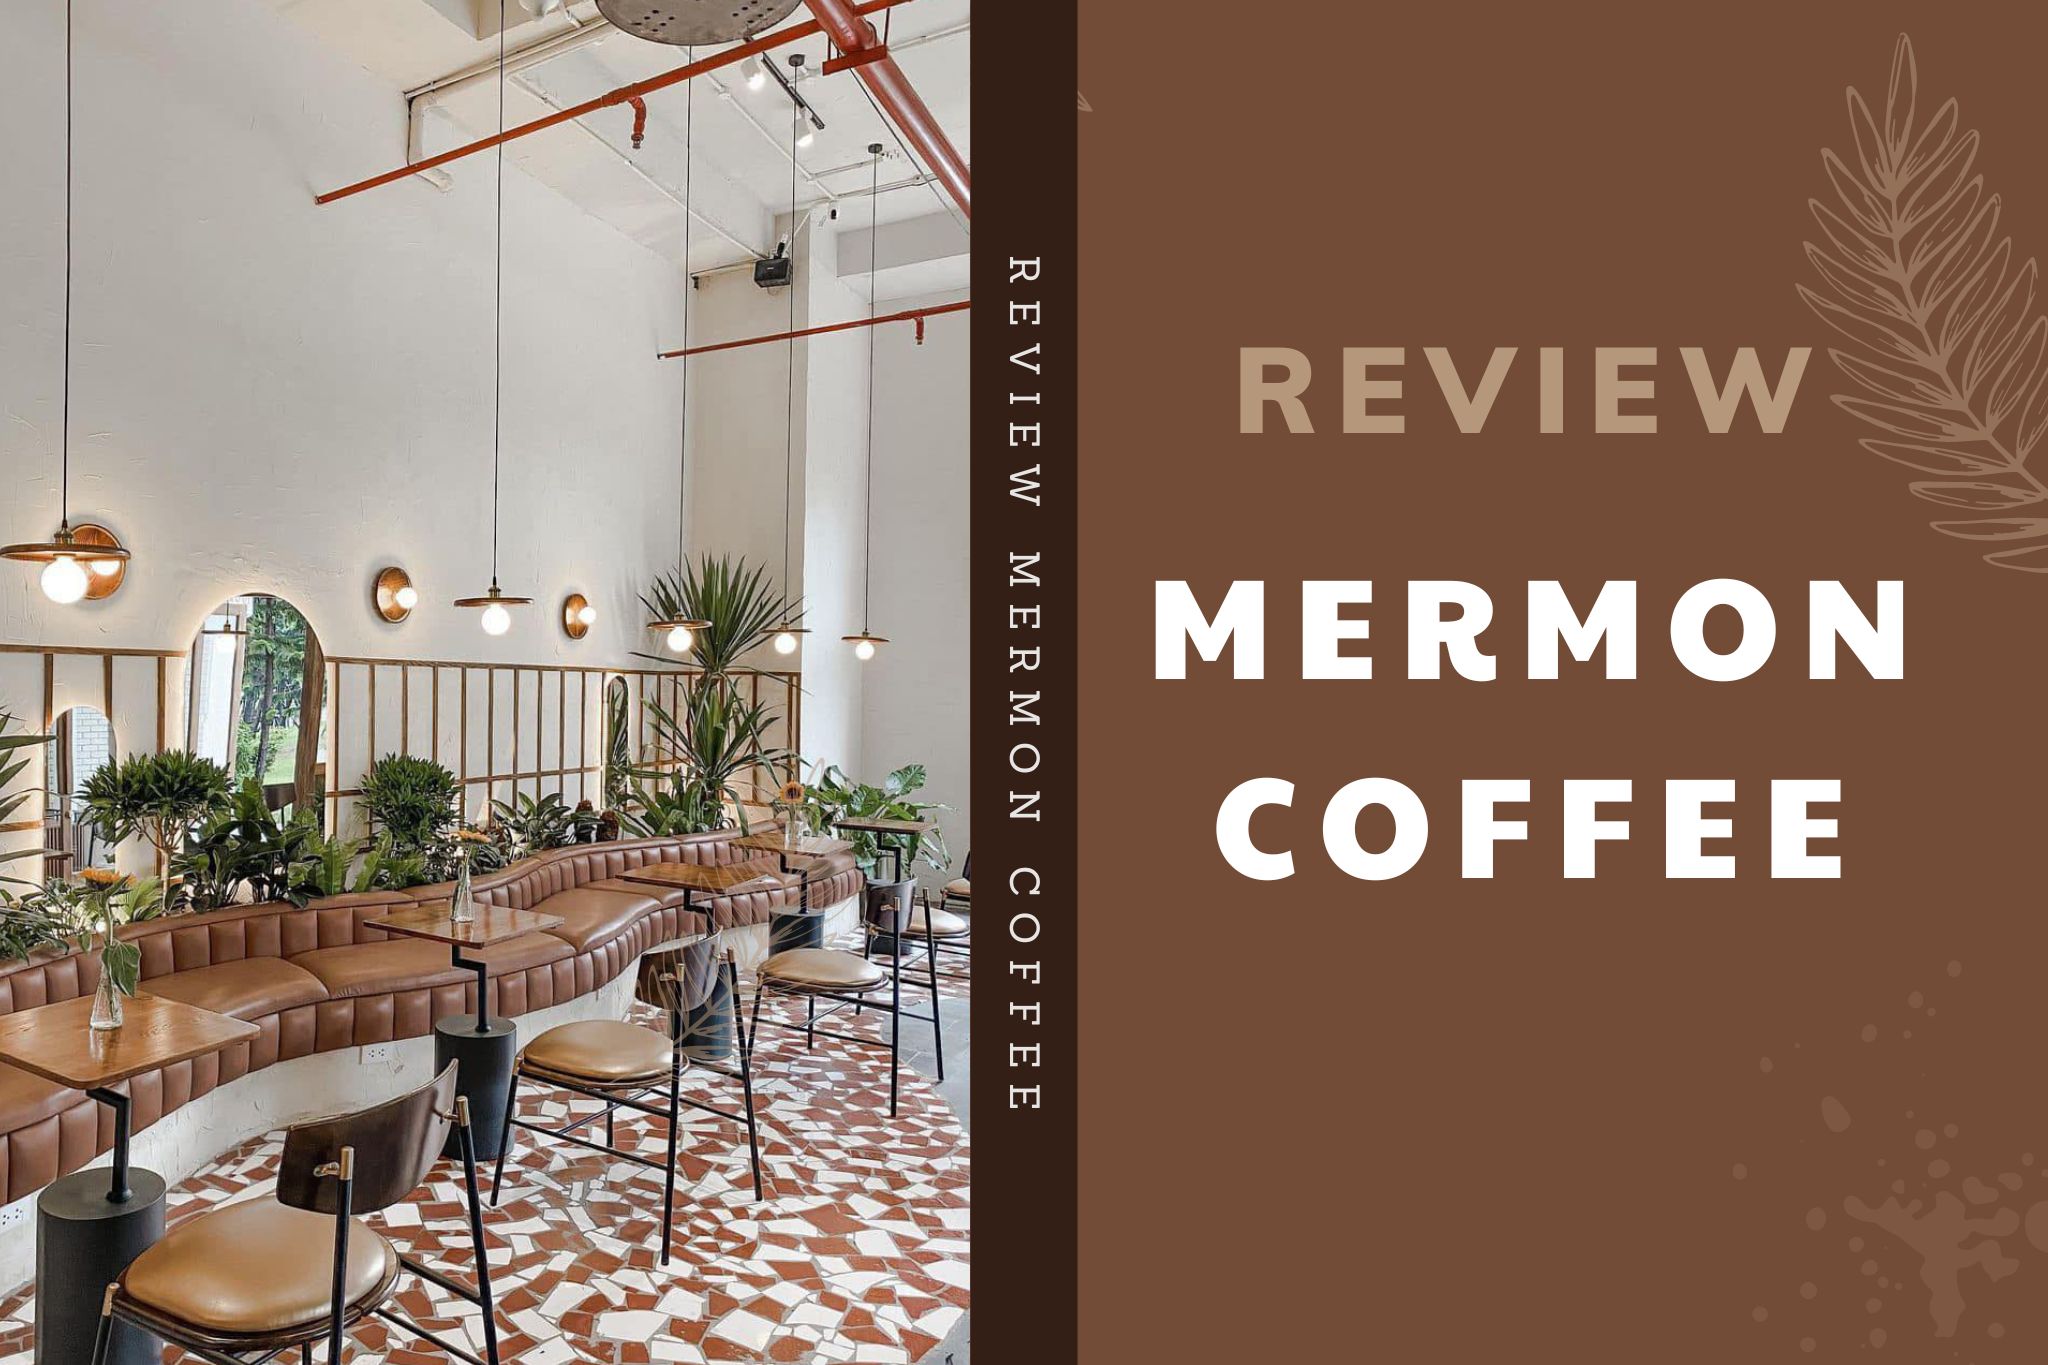 Review Mermon Coffee Royal - Phong Cách "minimalism" đậm chất Hàn Quốc